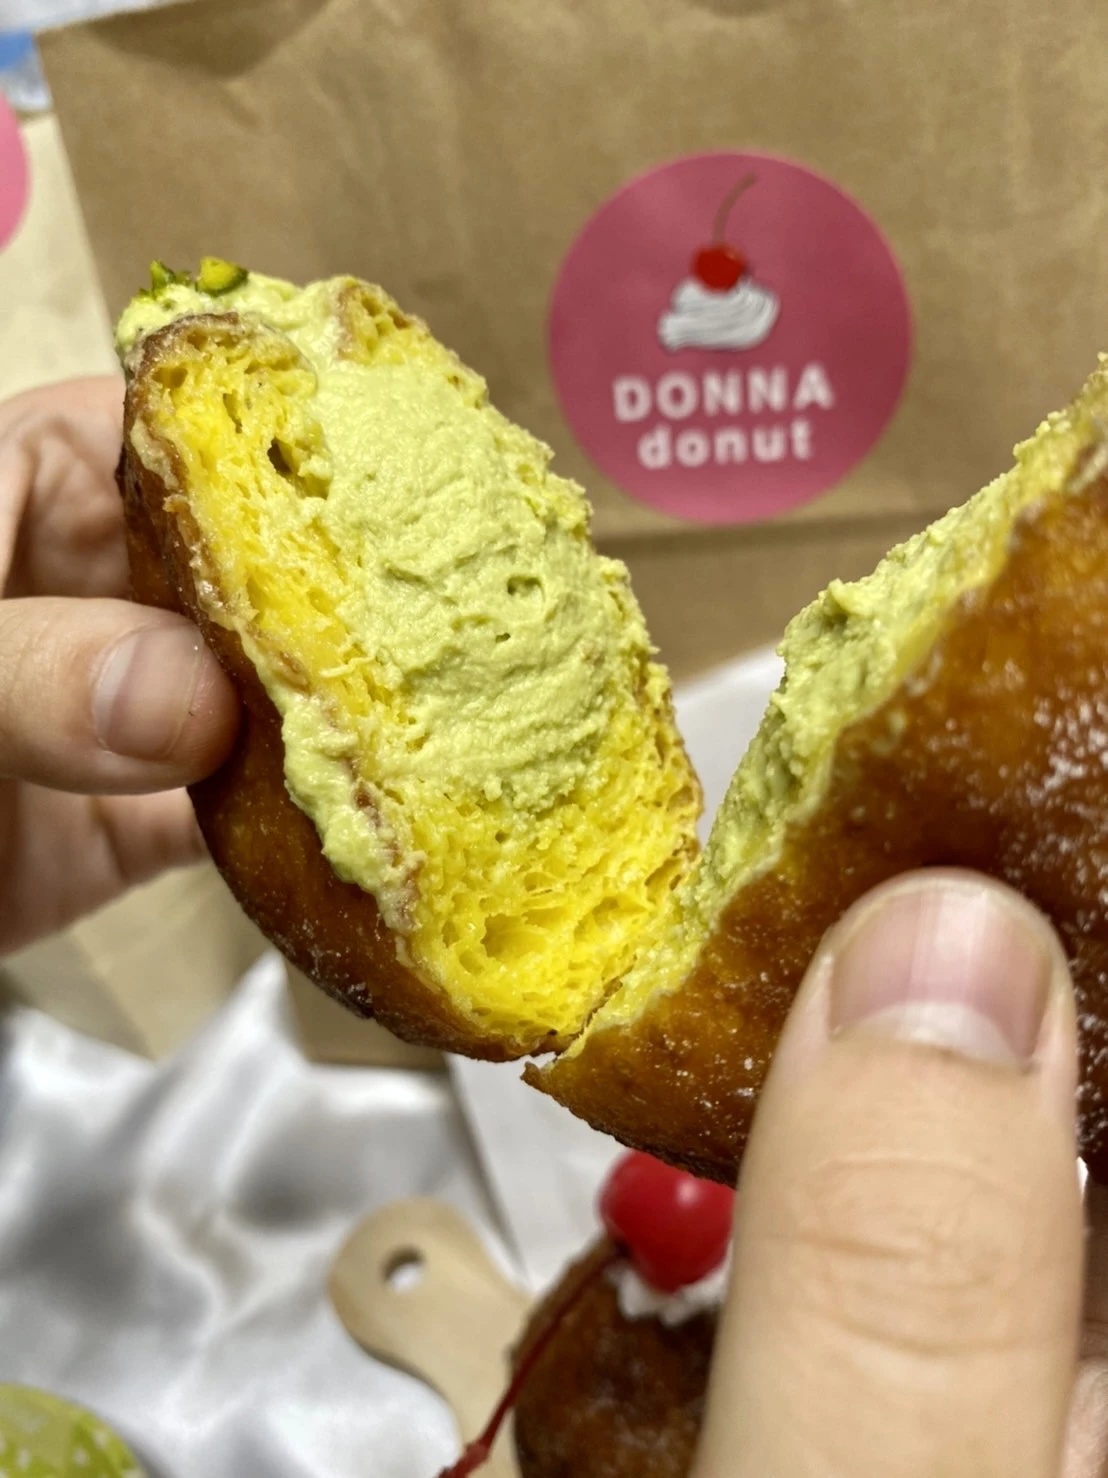 DONNA donut　生ドーナツ　ピスタチオ　大阪ドーナツ